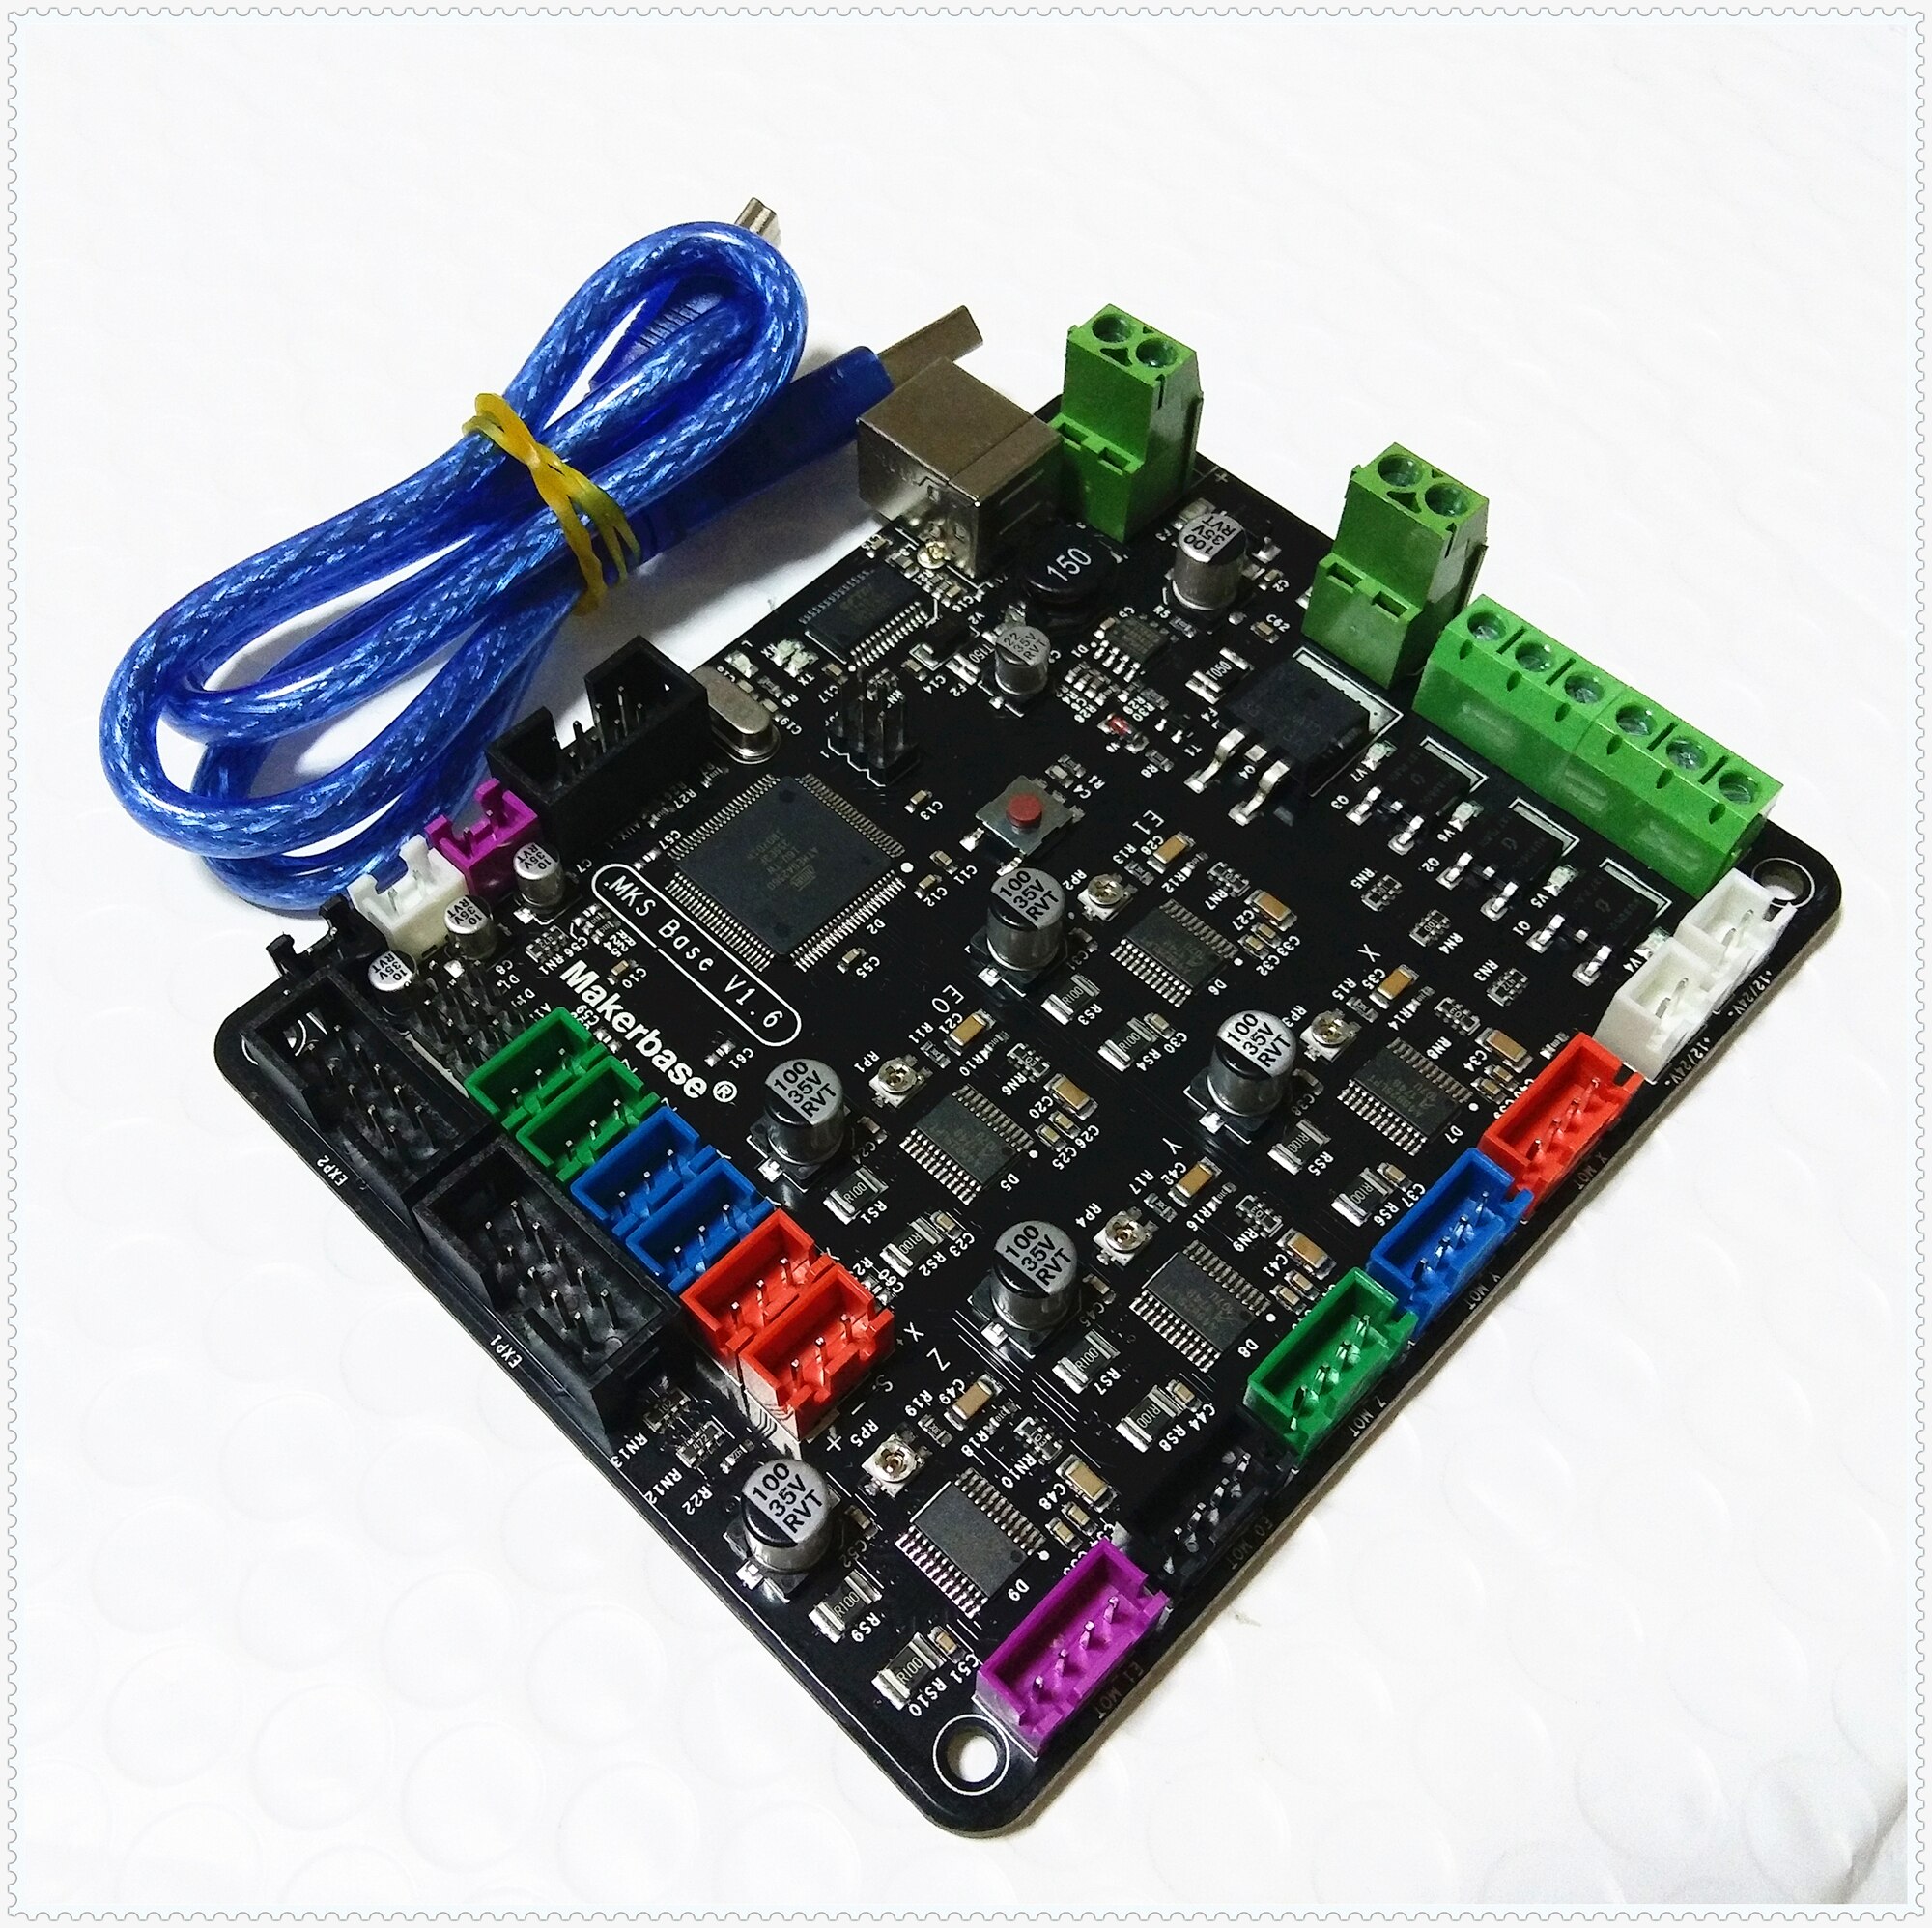 mks-base-v1-6-carte-mere-pour-imprimante-3d-circuit-integre-compatible-avec-les-rampes-carte-mega-2560-marlin-accessoires-electroniques-a-monter-soi-meme-g-3.jpg